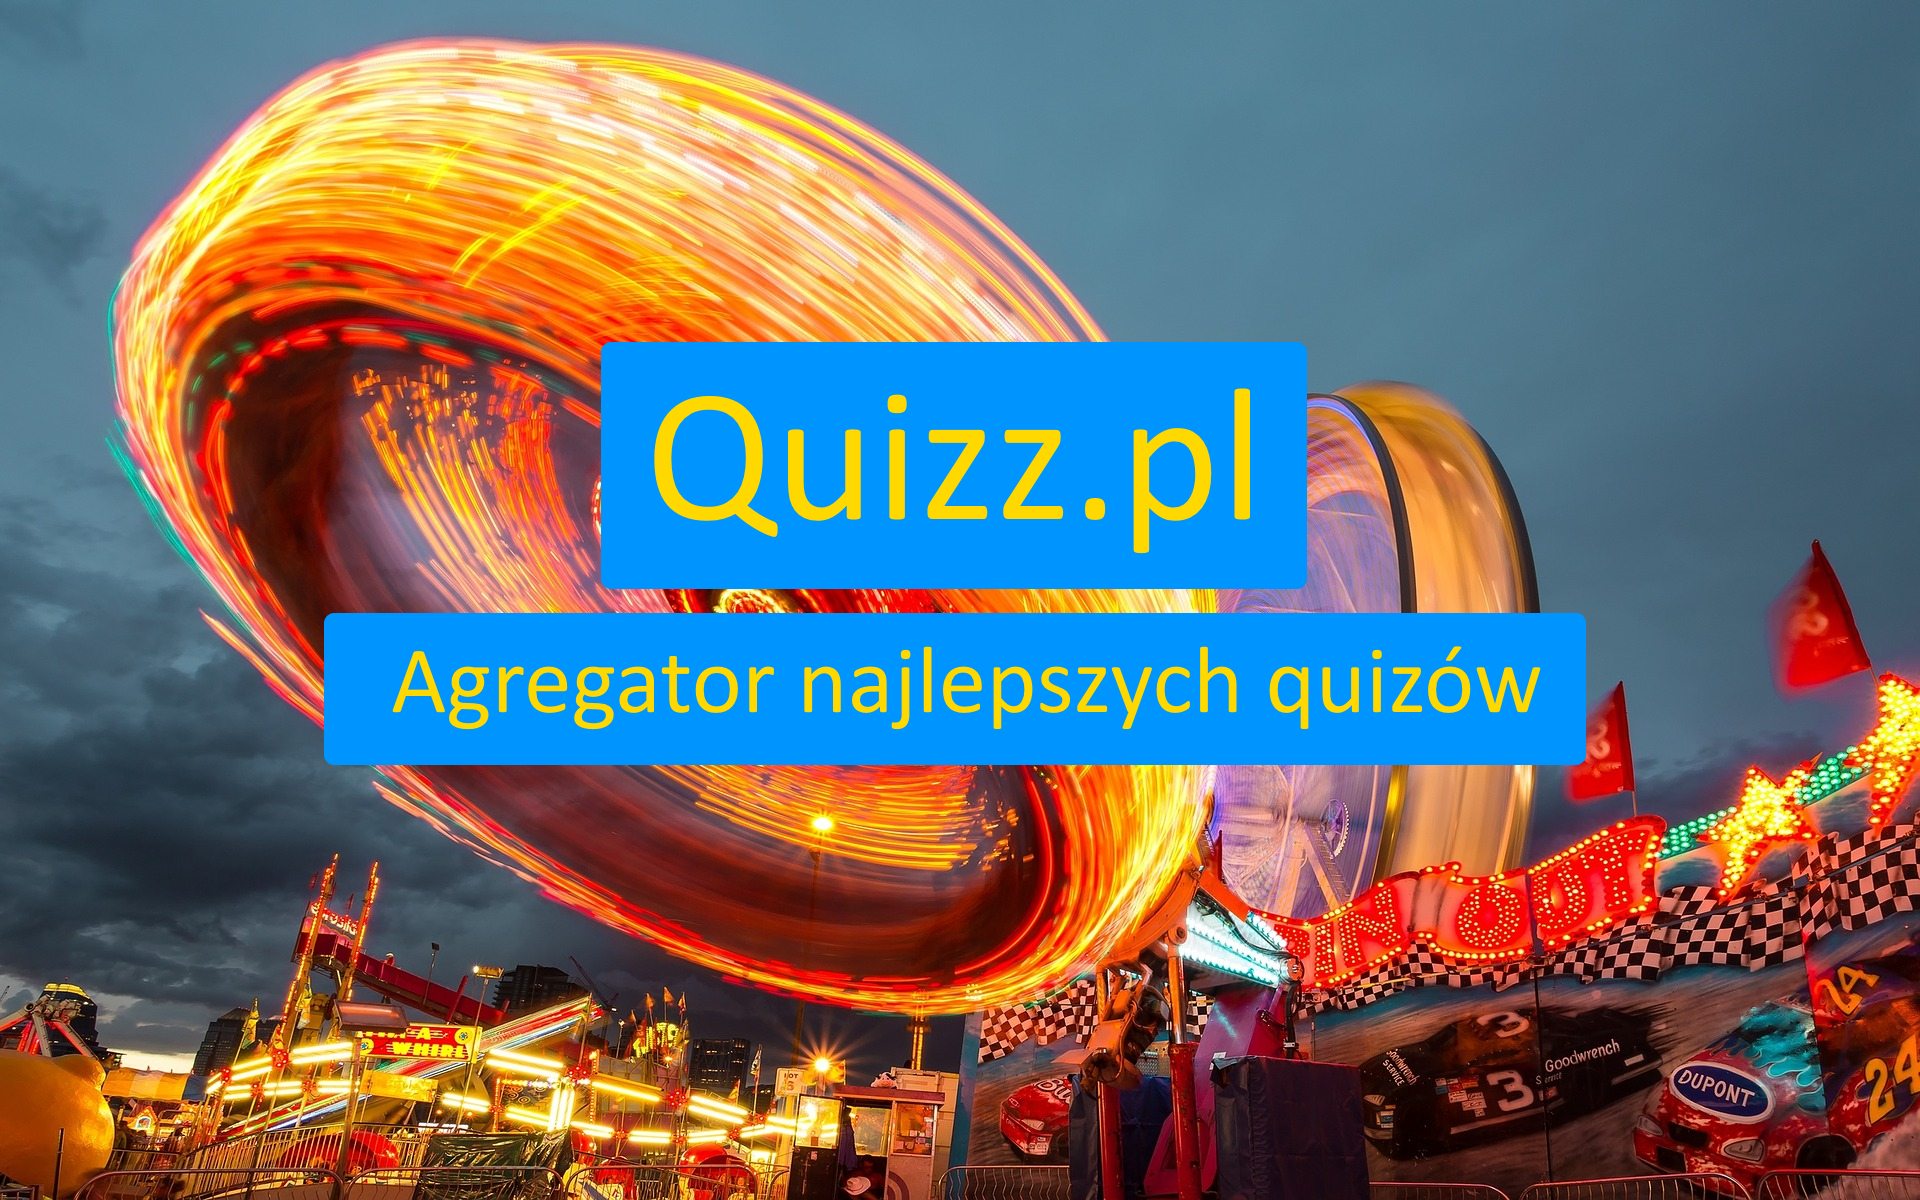 Dziewczyna - bezpłatne quizy, testy wiedzy i ankiety - www.quizz.pl